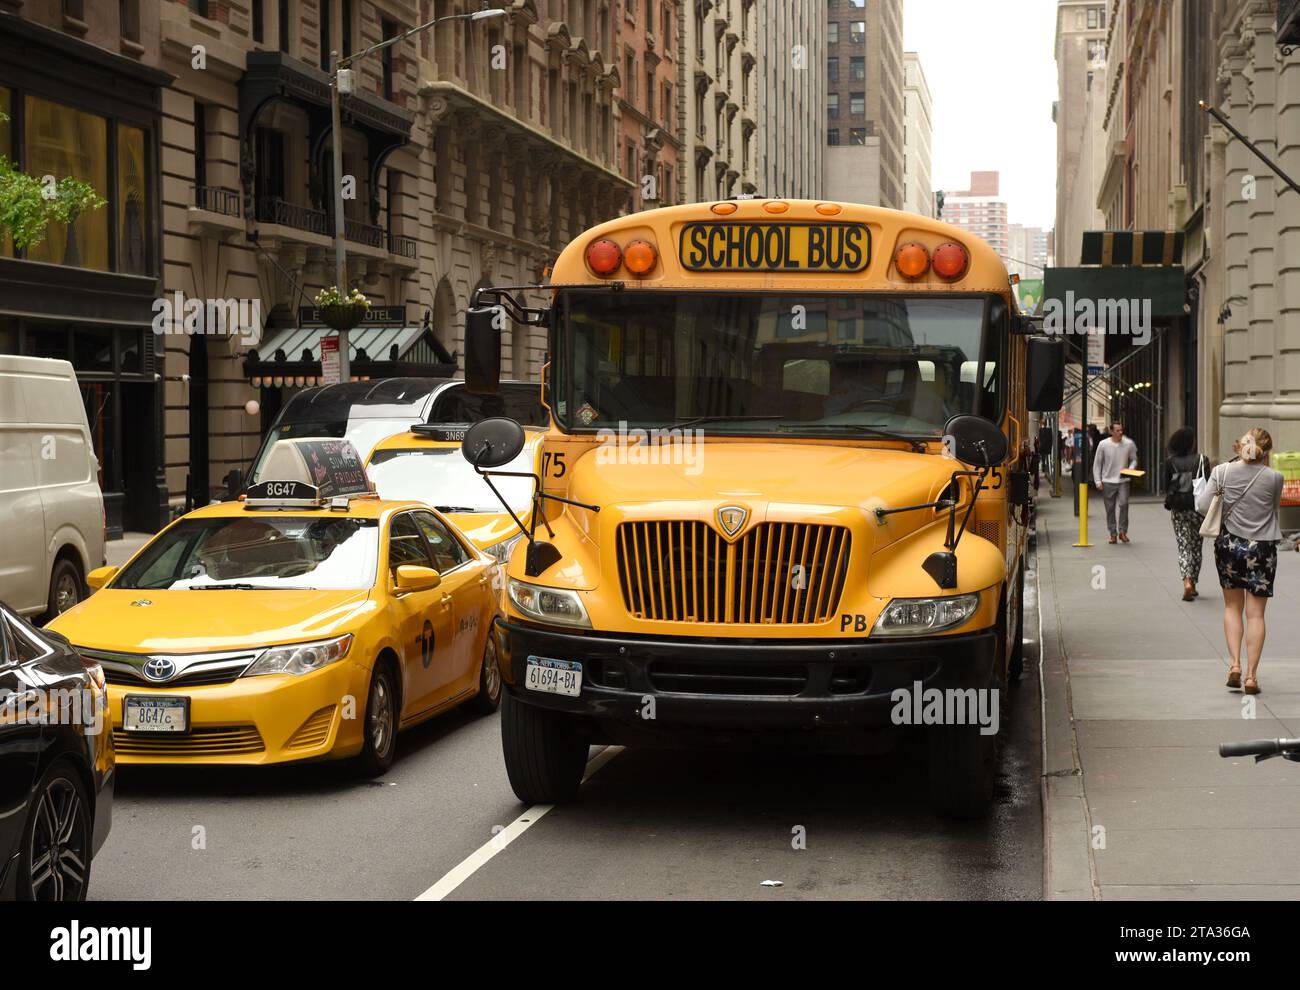 New York, USA - 30 mai 2018 : taxi jaune et bus scolaire dans la rue de Manhattan à New York. Banque D'Images